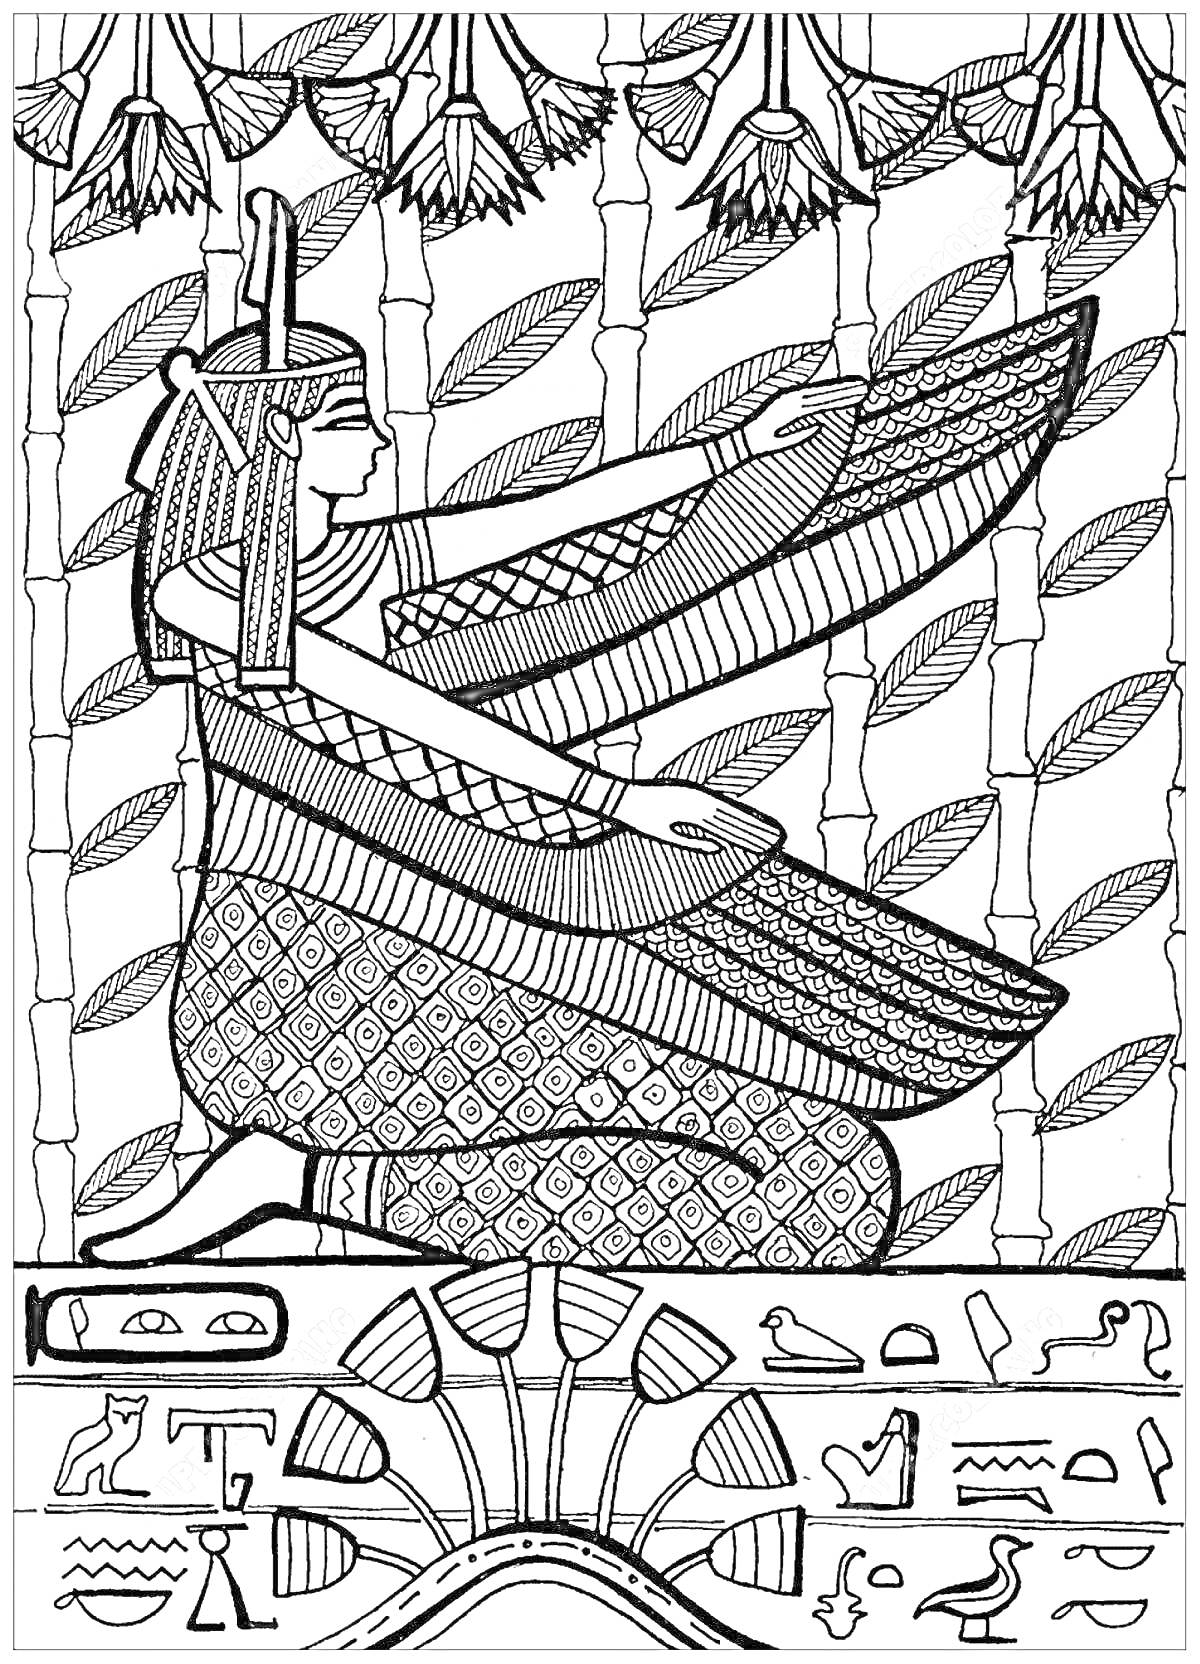 Египетская богиня, женщина в традиционном одеянии с разнесёнными крыльями, стоящая на платформе с иероглифами, на фоне папирусов и цветов лотоса